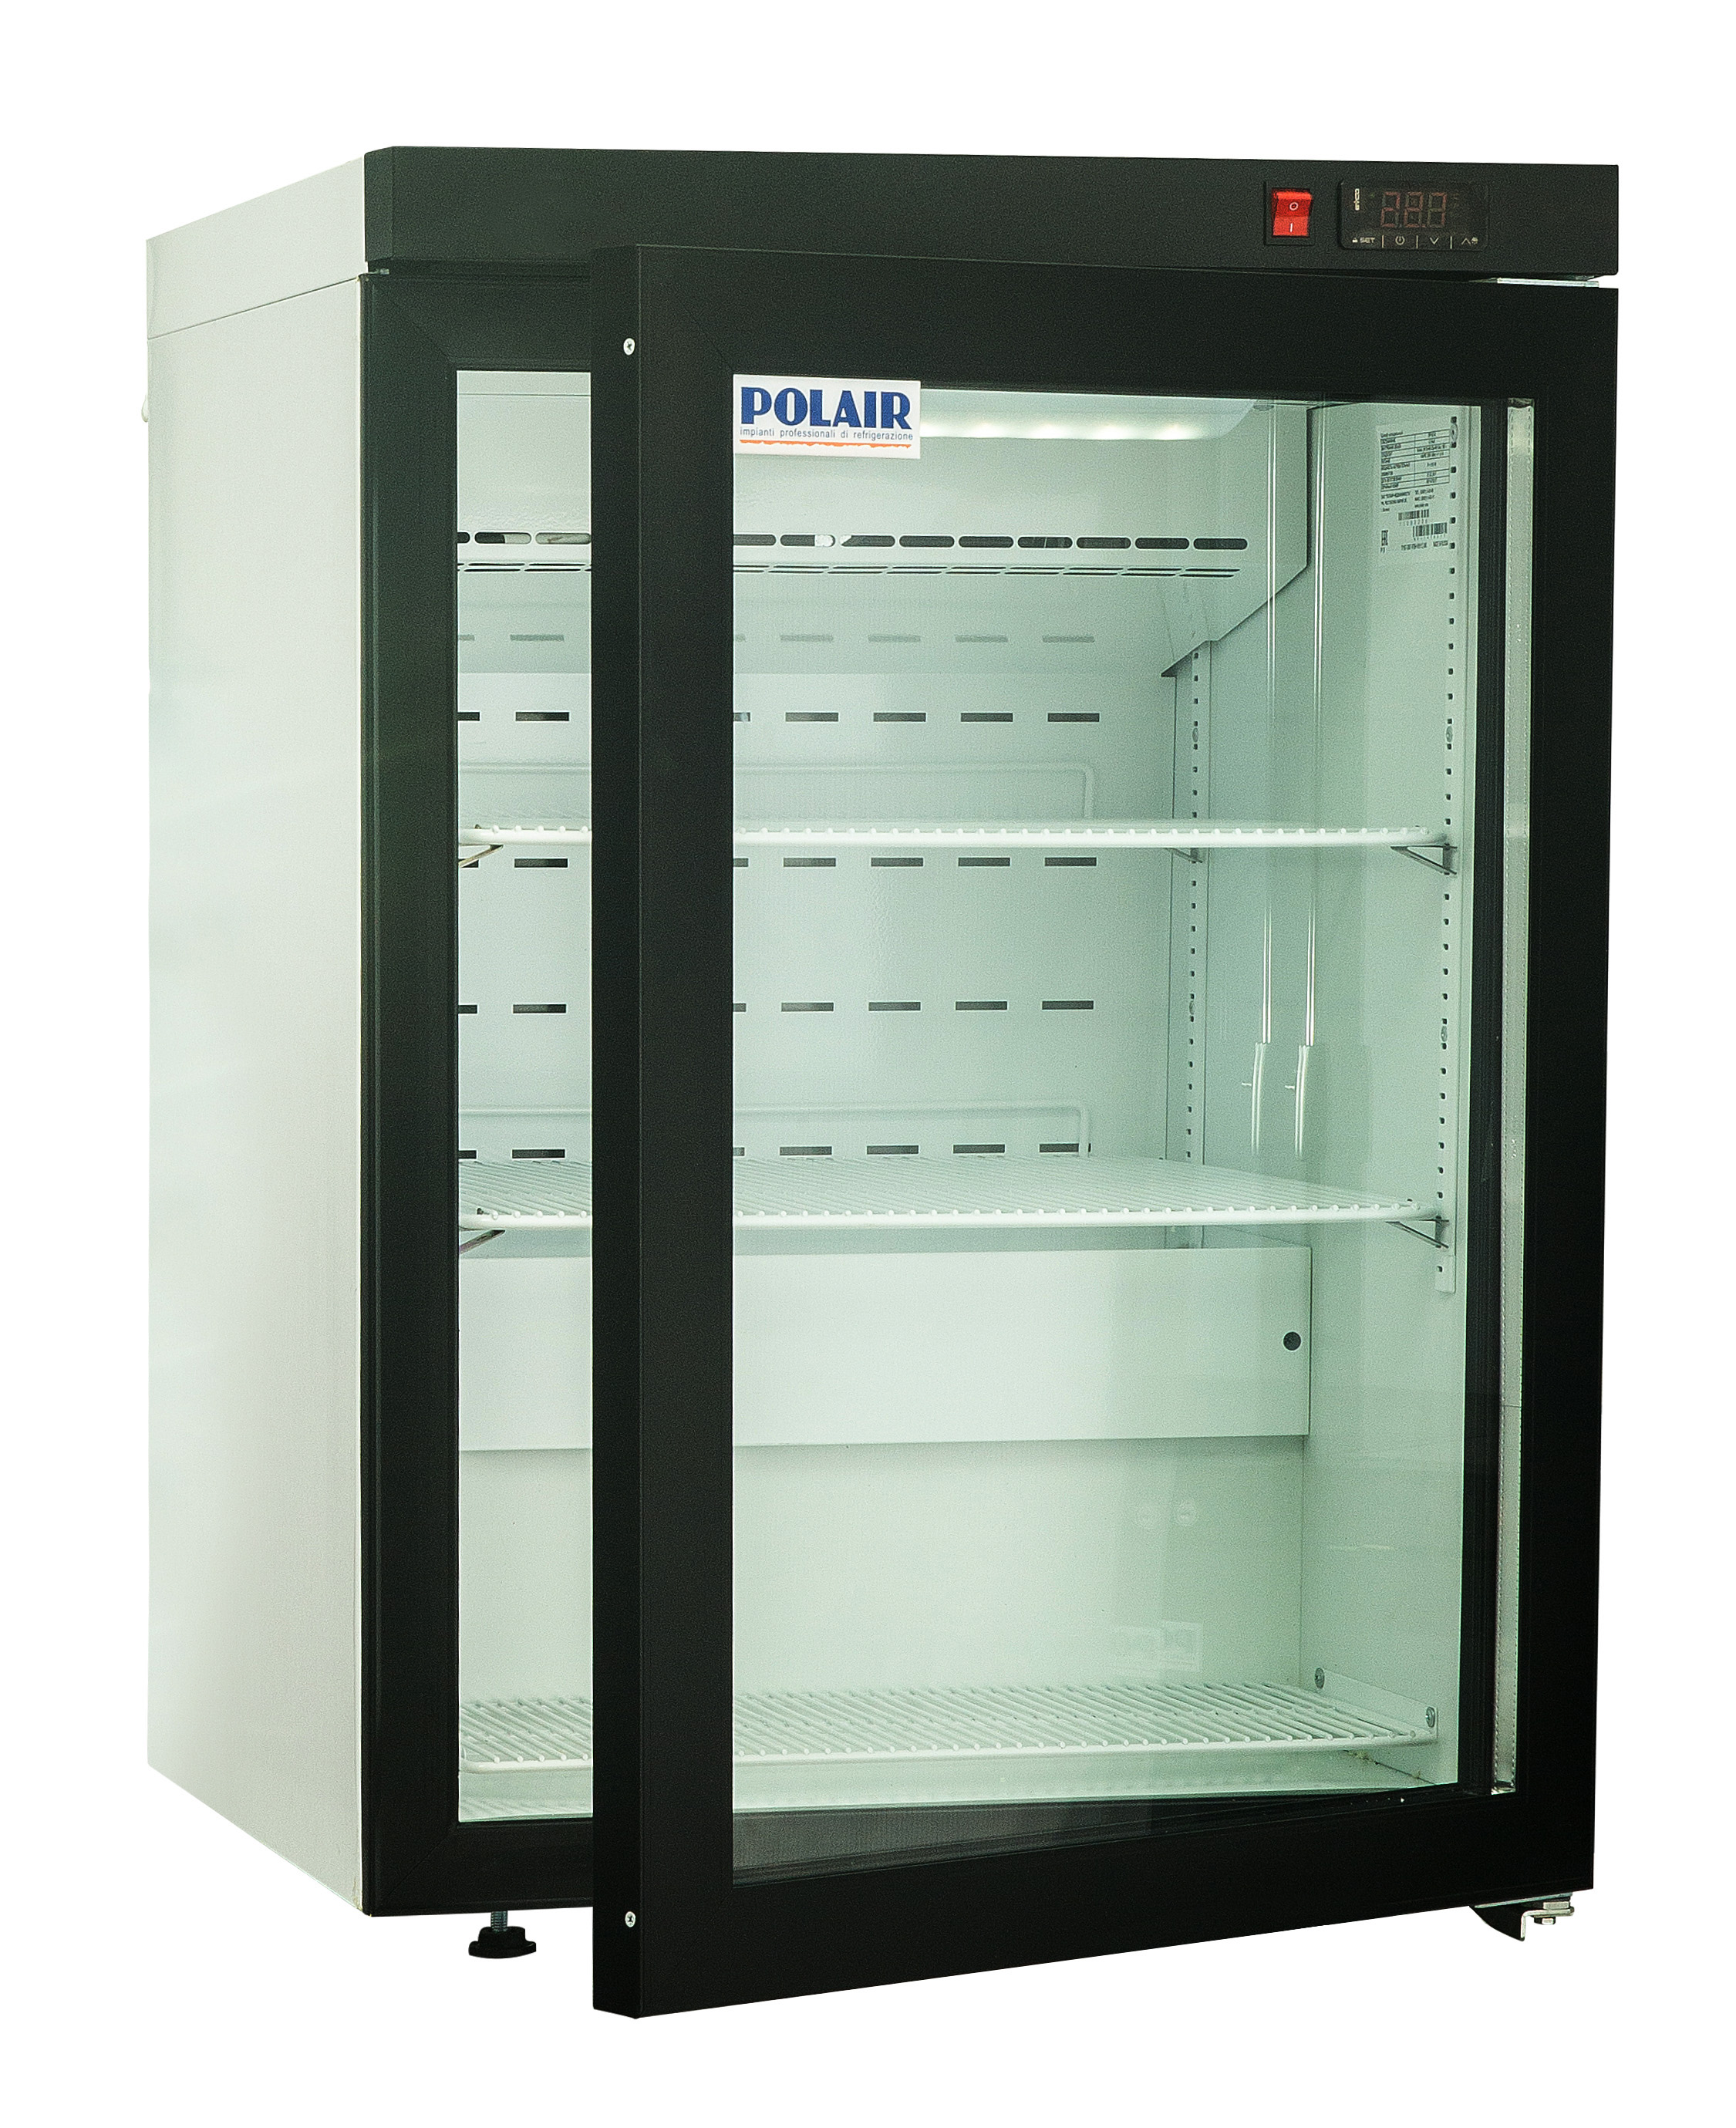 Холодильные шкафы под. Шкаф холодильный dm102-Bravo. Шкаф холодильный Polair dm102-Bravo. Полаир dm102-Bravo. Шкаф Polair dm102-Bravo.